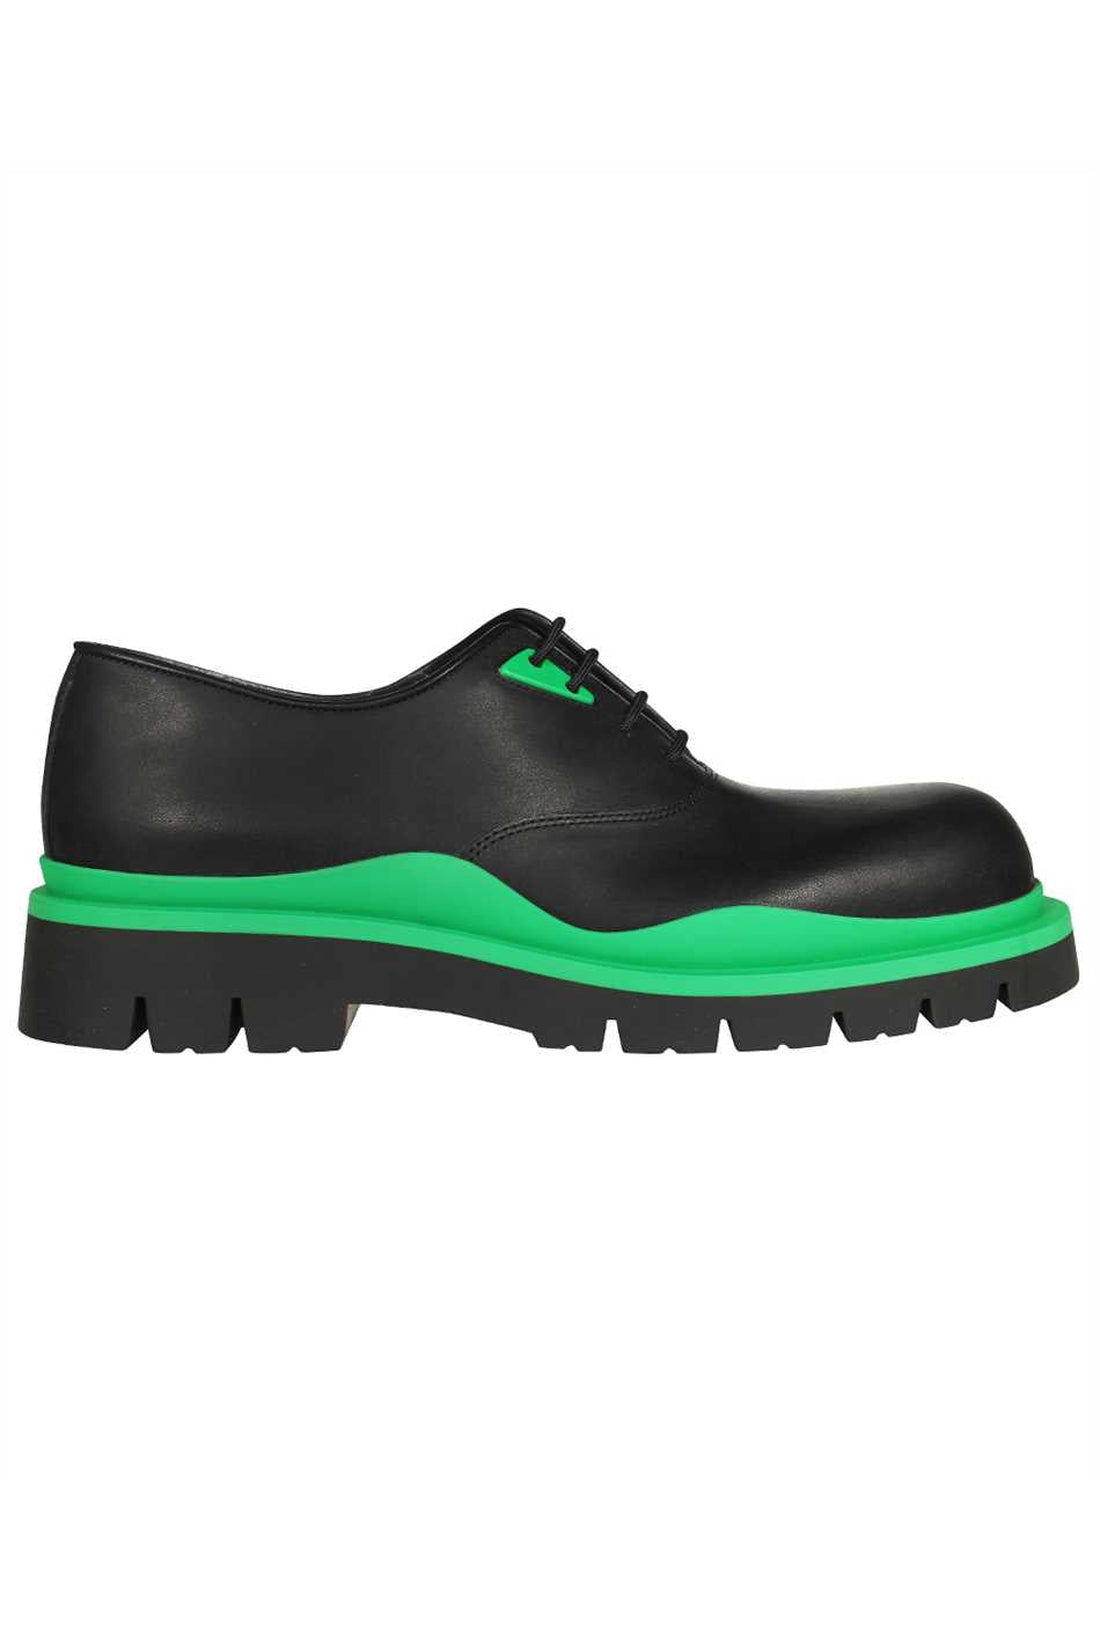 Bottega Veneta-OUTLET-SALE-Tire leather lace-up shoes-ARCHIVIST